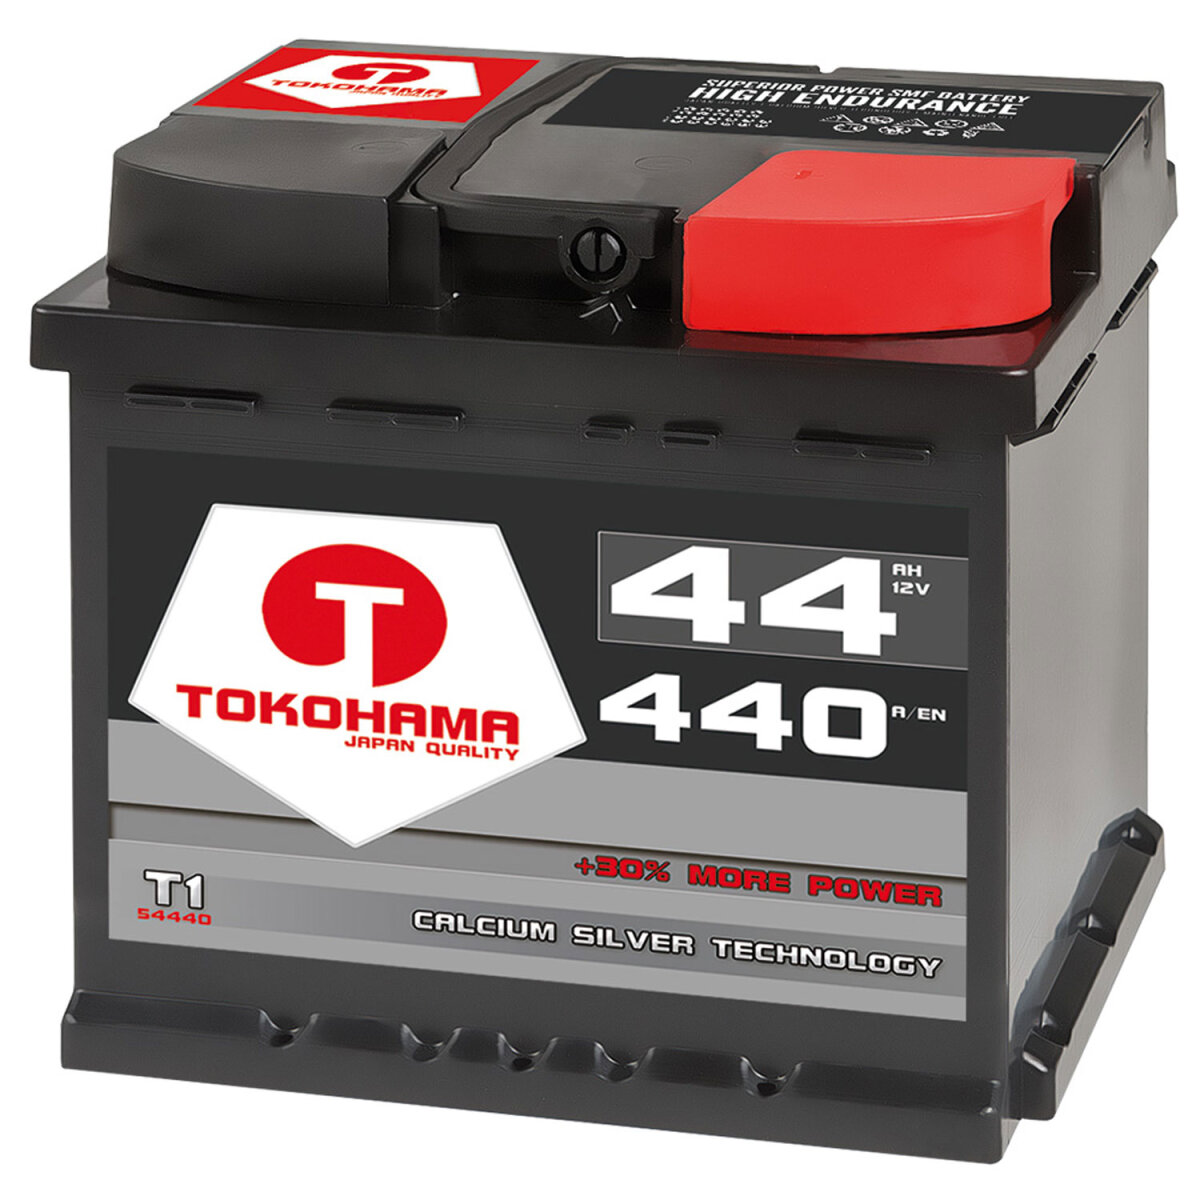 https://www.batteriescout.de/media/image/product/4102/lg/tokohama-autobatterie-44ah-12v.jpg